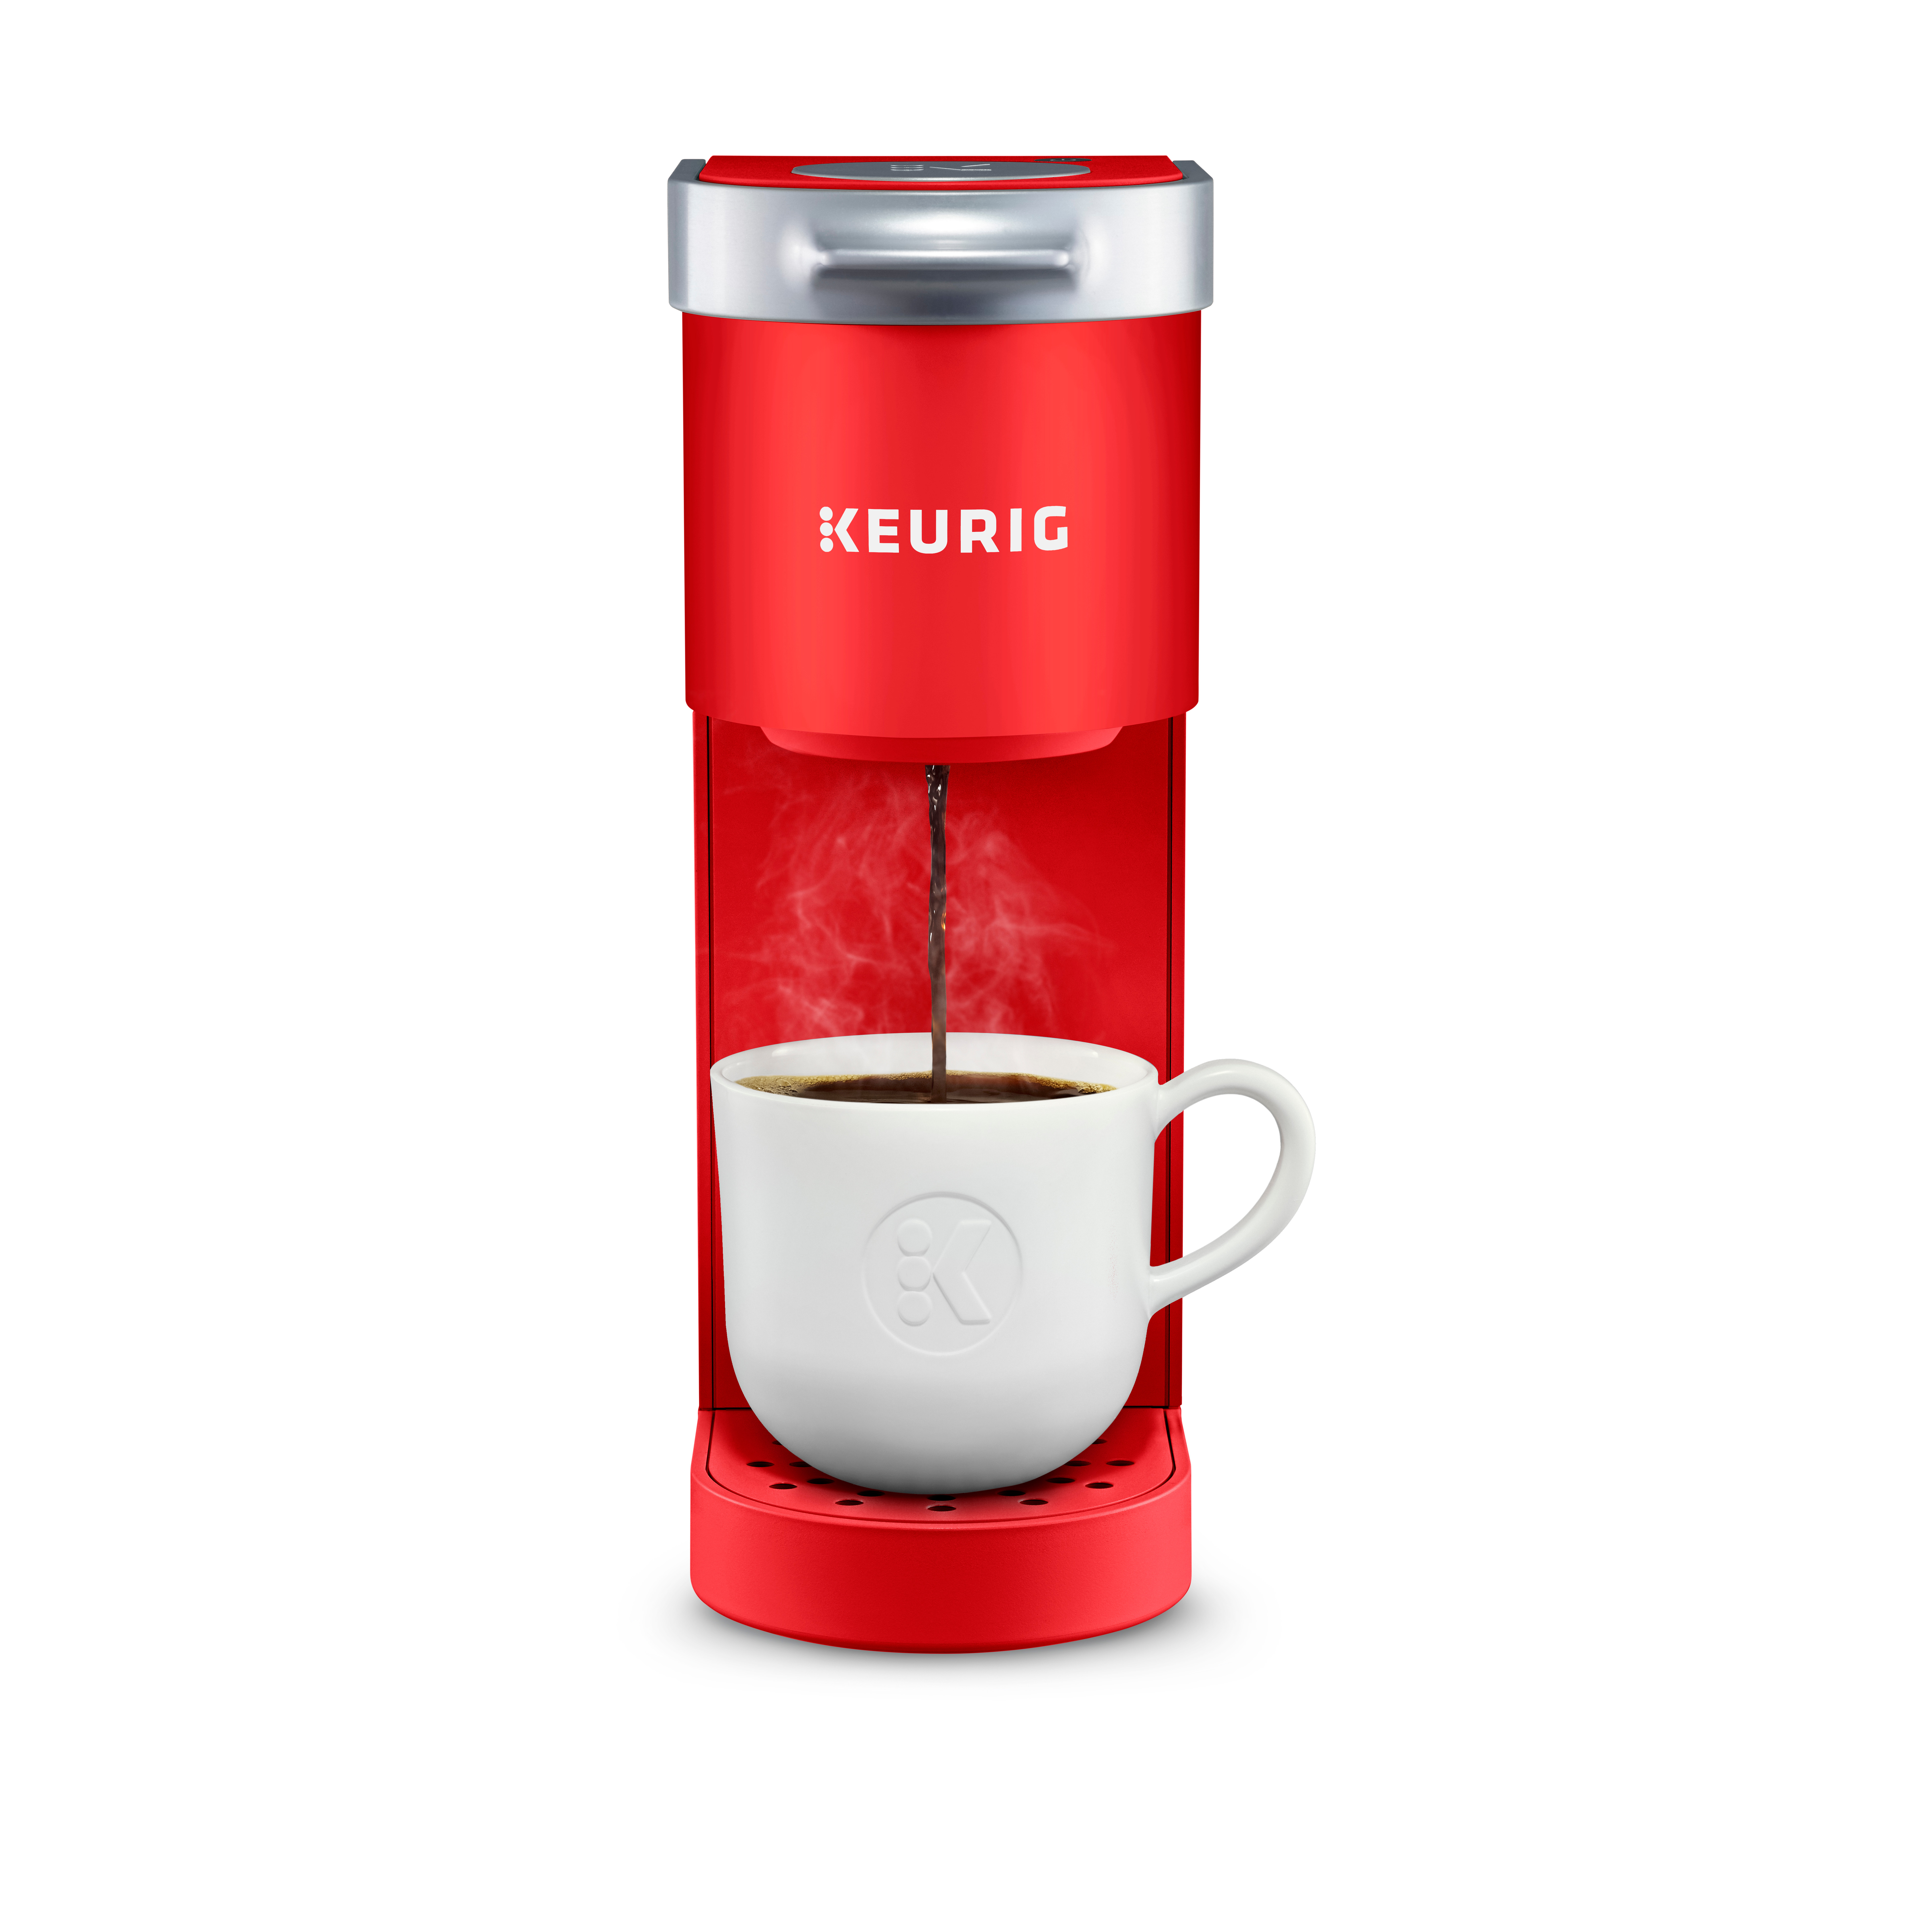 Keurig K-Mini Single Serve K-Cup Pod Coffee Maker, Poppy Red - image 1 of 9